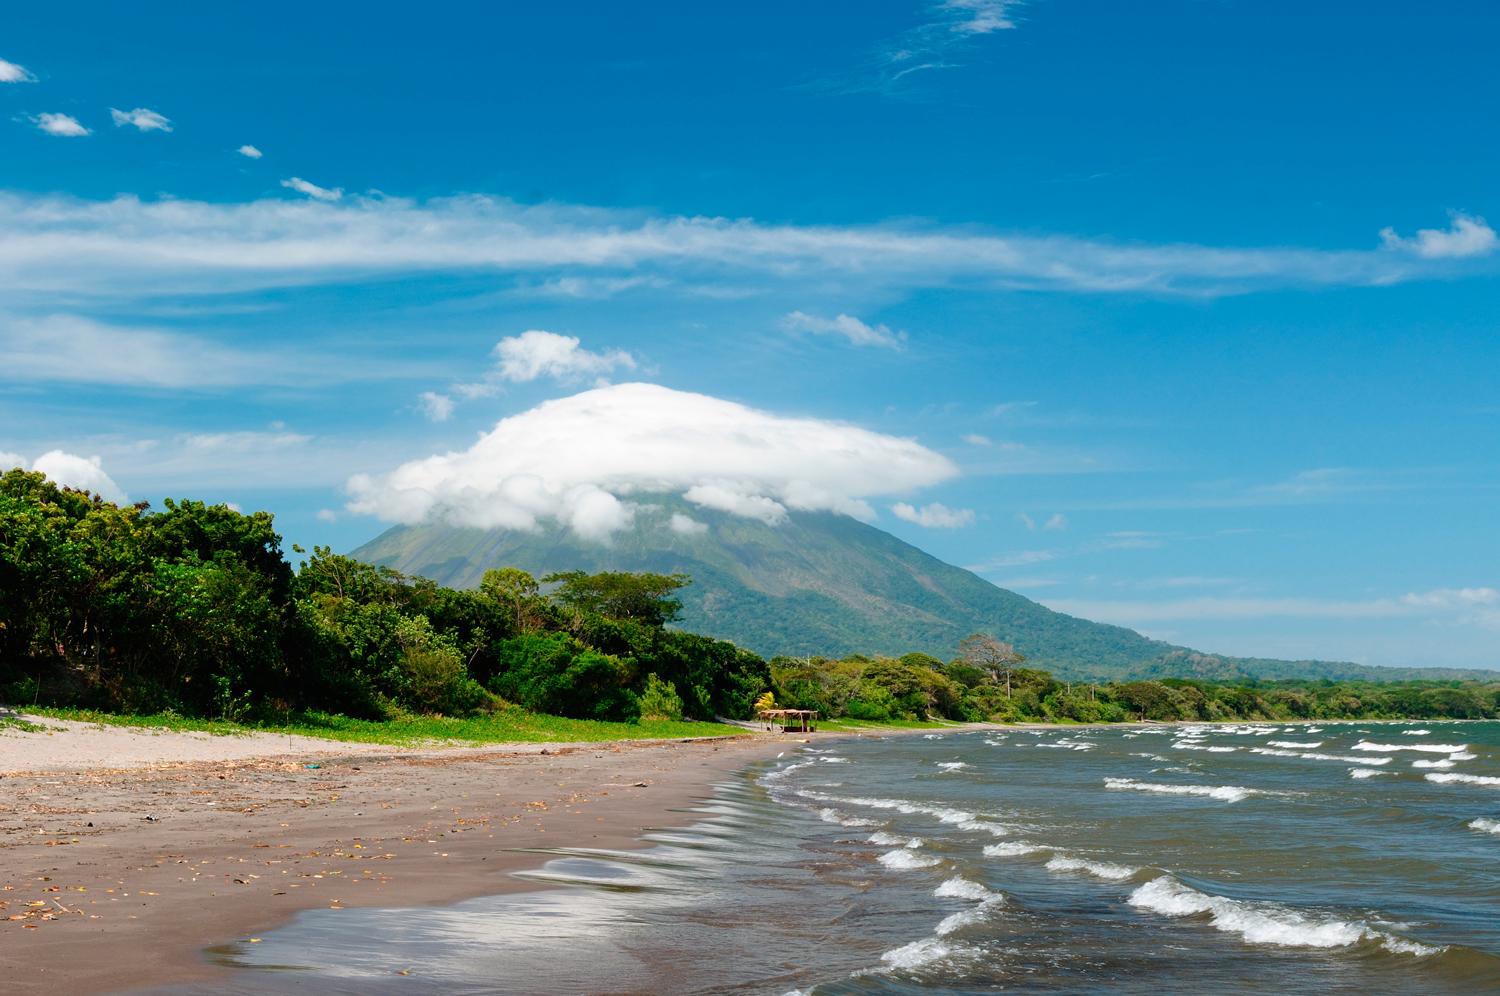 Många förutspår att Nicaragua blir ”det nya Costa Rica” - något som tyder på att priserna antagligen kommer att gå upp i landet de närmsta åren. Här kan du utan problem klara dig på så lite som 140 kronor per dag.